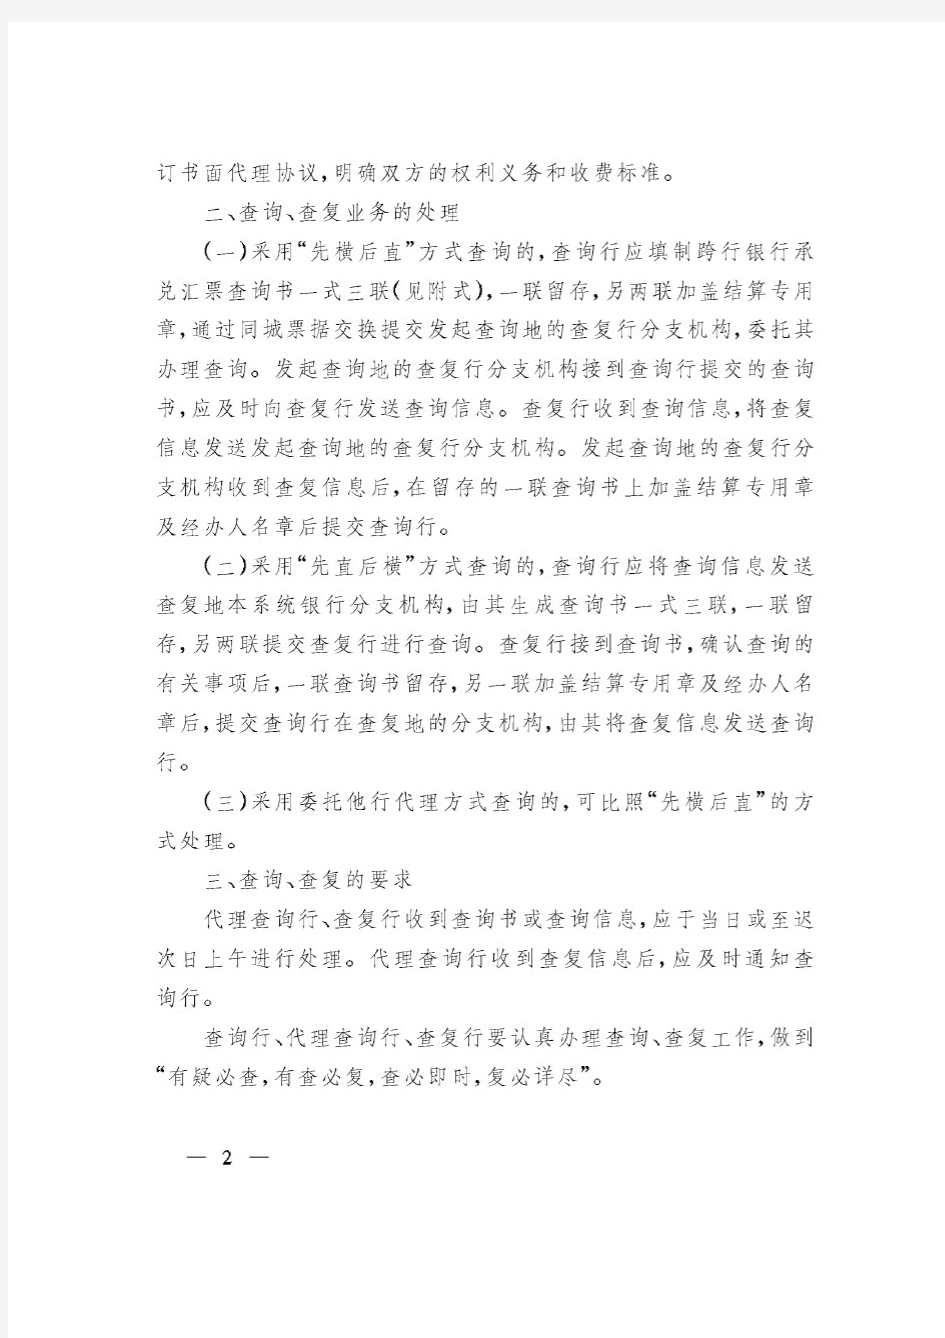 (银发[2002]63号)中国人民银行关于商业银行跨行银行承兑汇票查询、查复业务处理问题的通知